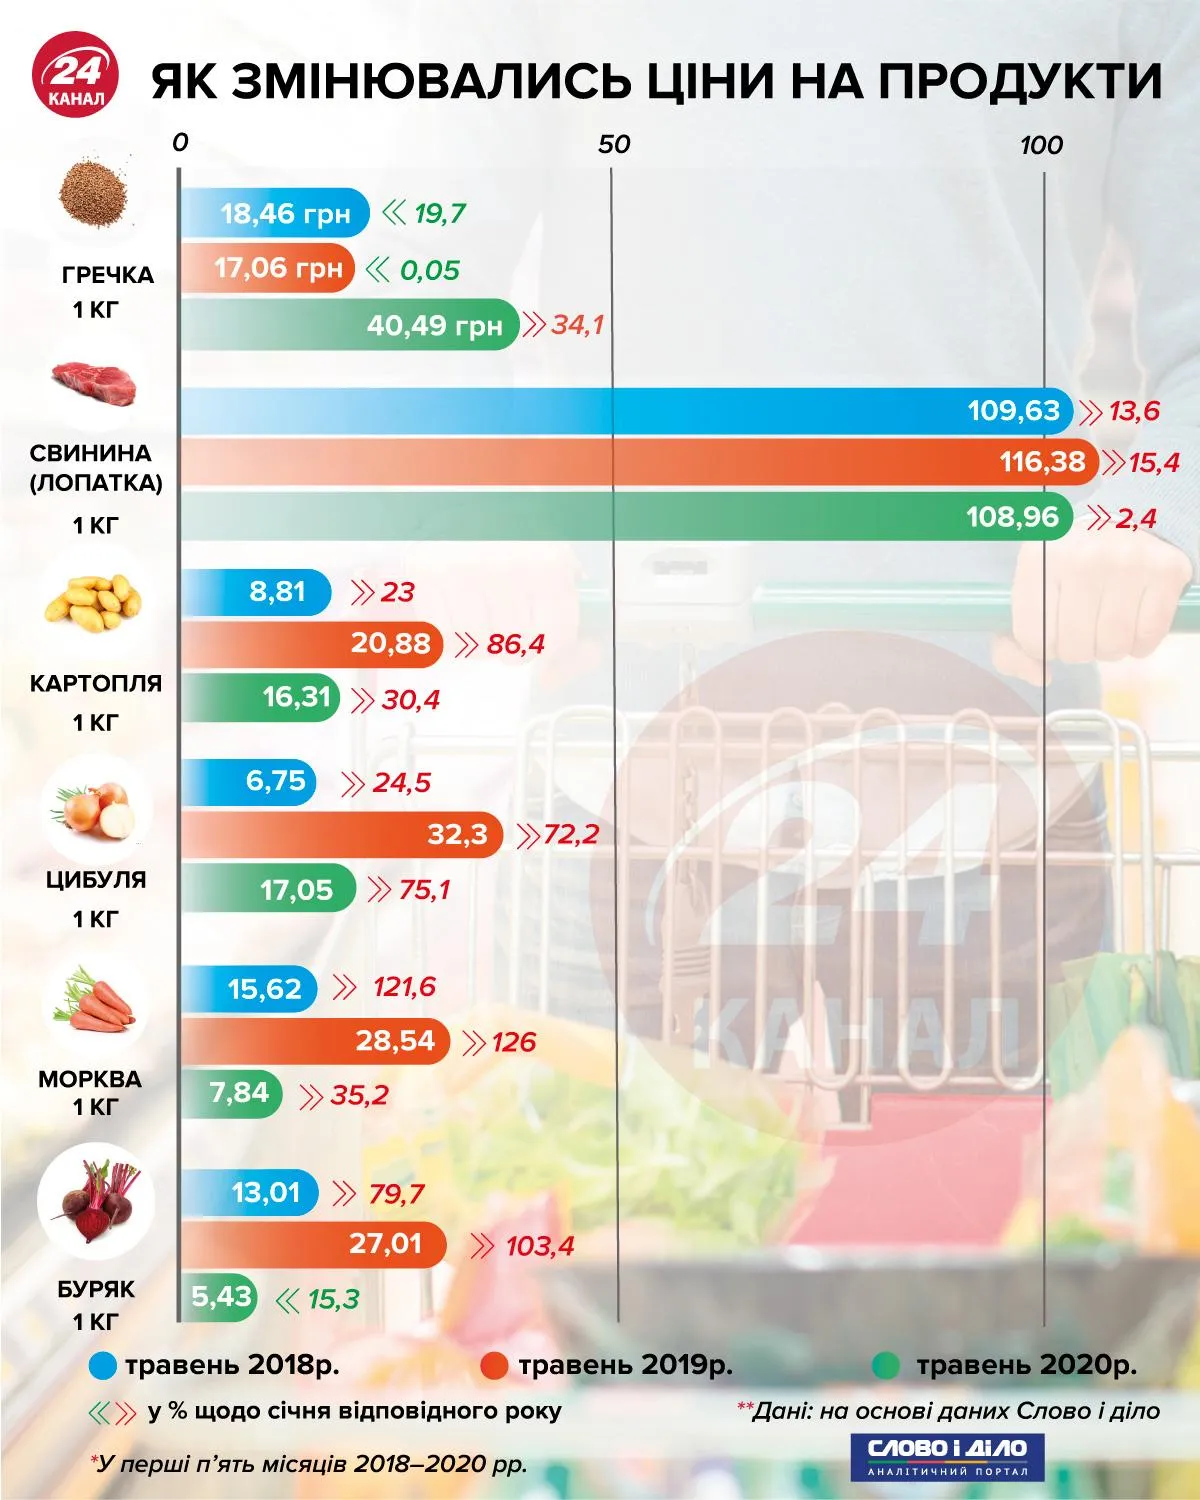 Як змінювались ціни на продукти інфографіка 24 каналу